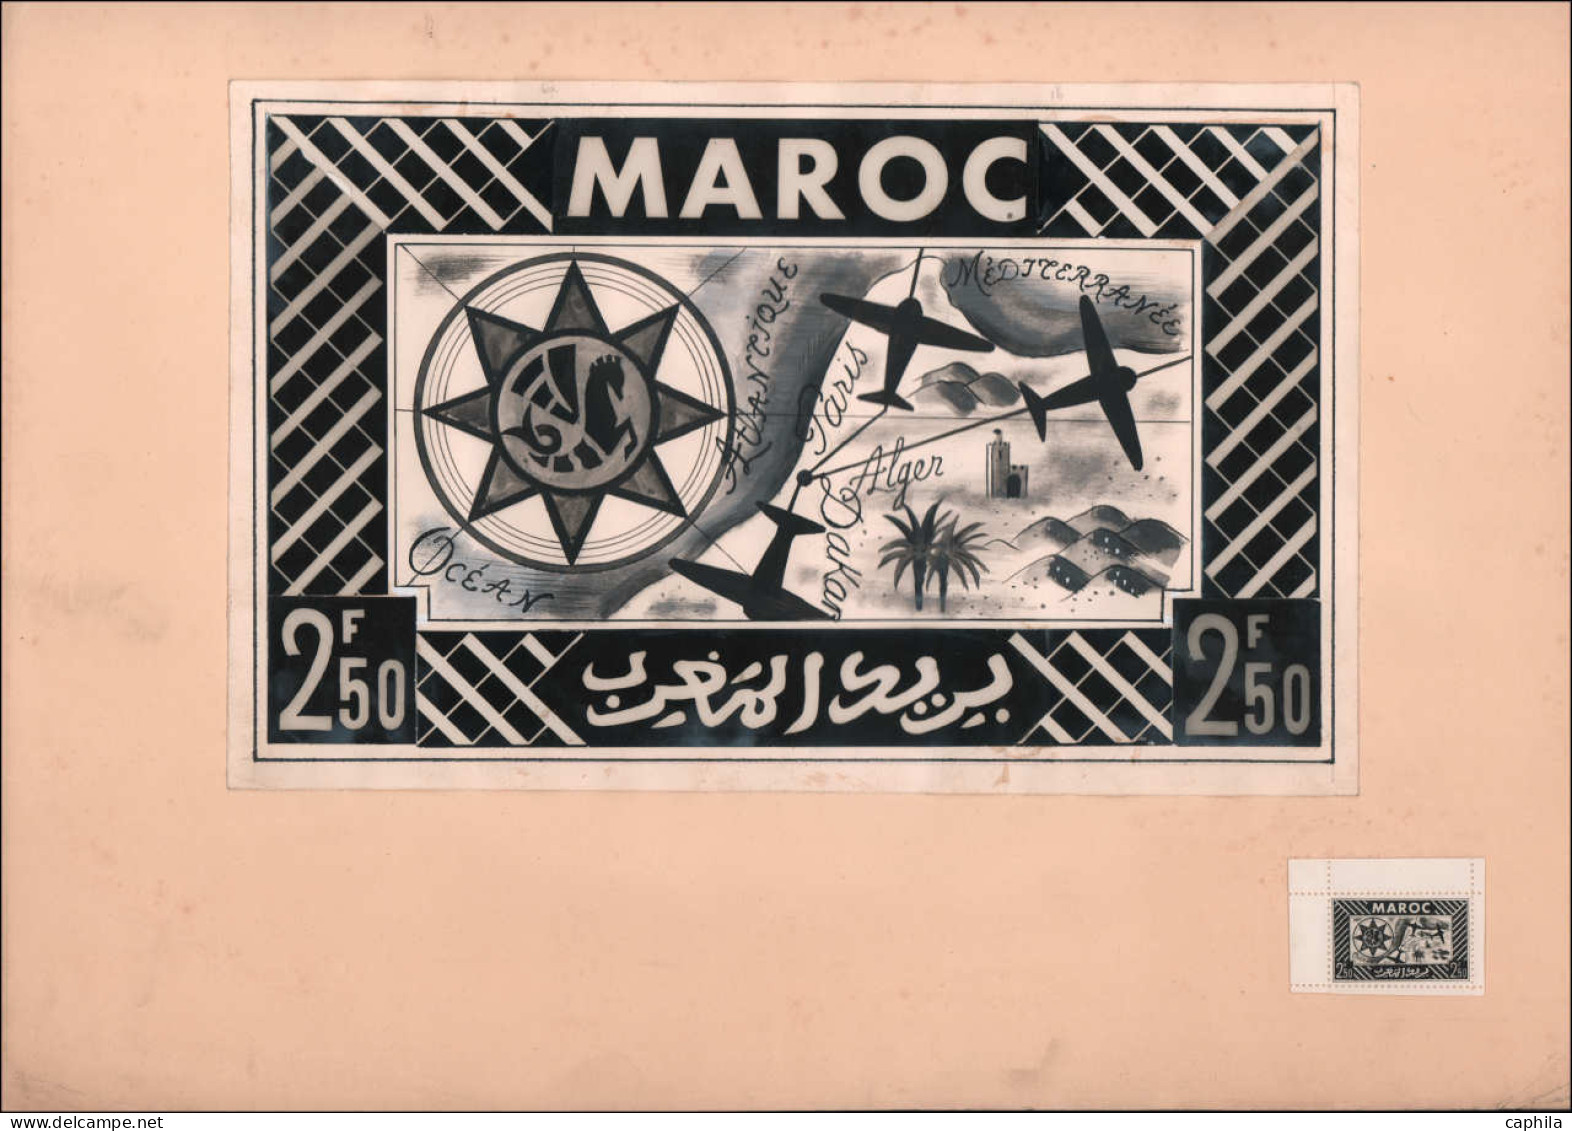 MAQ MAROC - Epreuves d'Artiste - (1933/1935), ensemble de 11 maquettes + réduction photo, grand format (300 x 195), encr